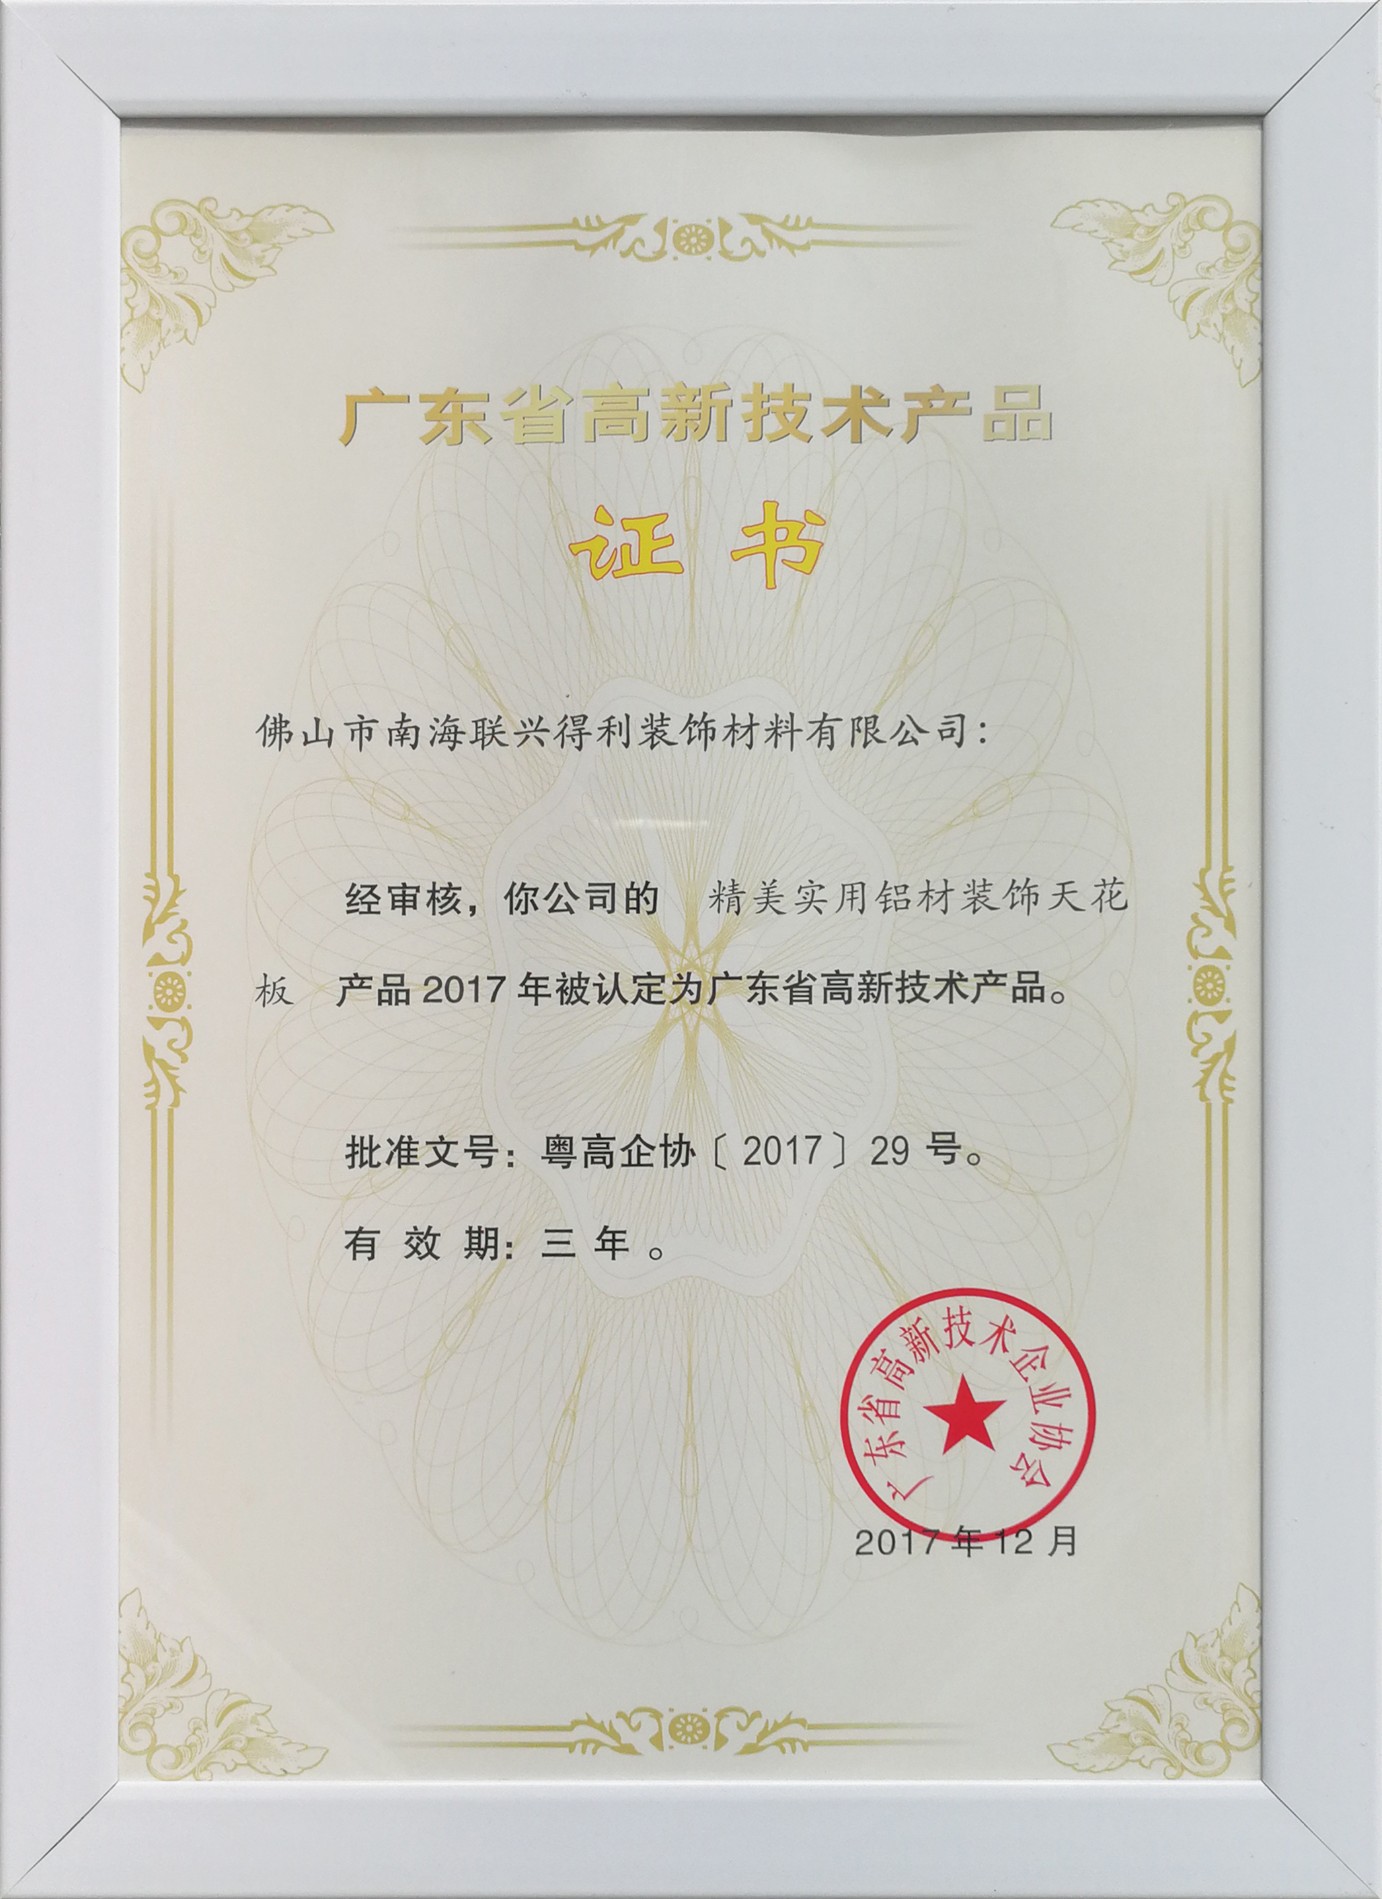 Guangdong High-Tech Certificate